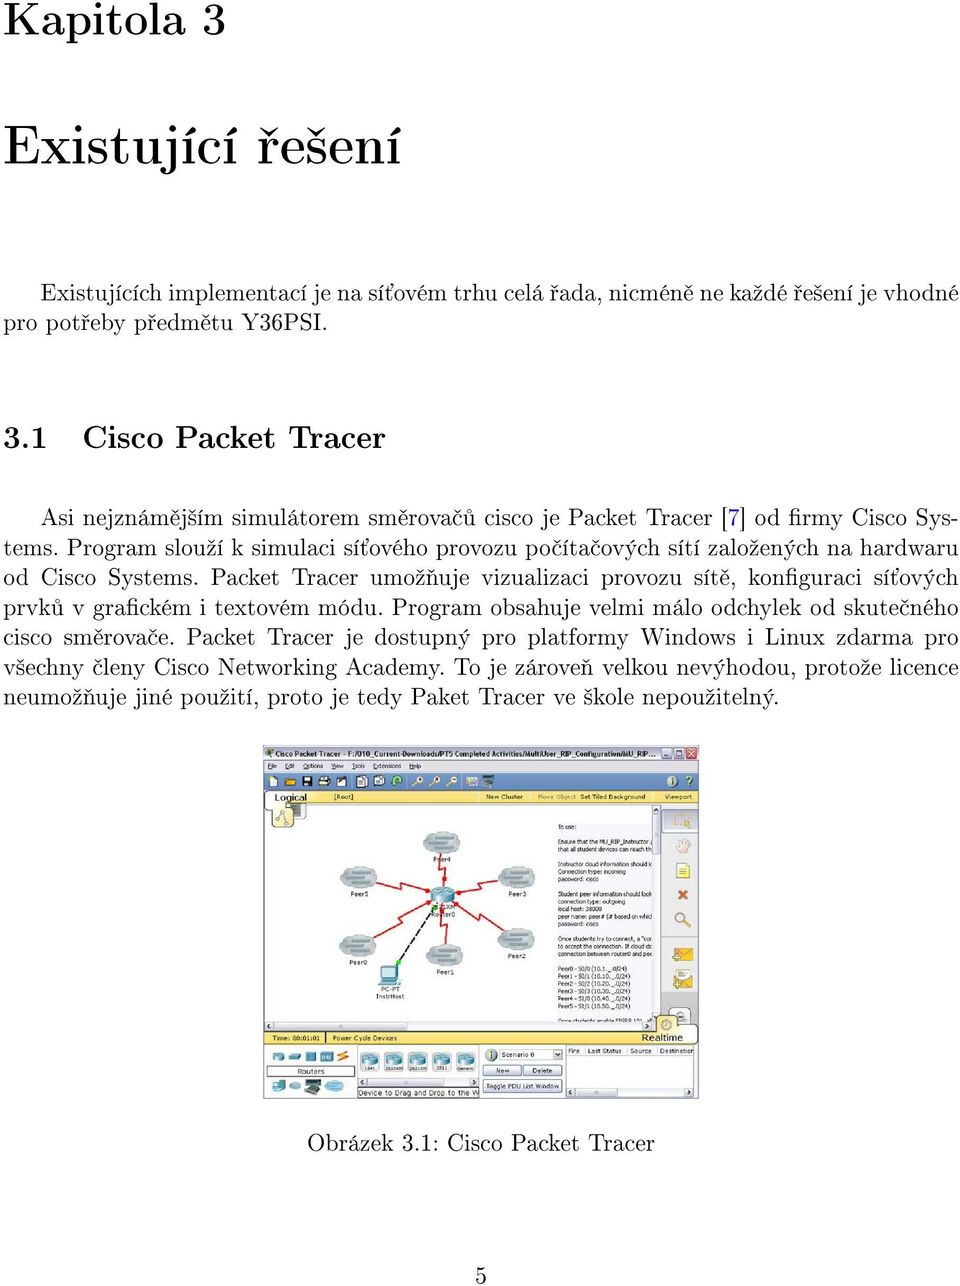 Packet Tracer umoº uje vizualizaci provozu sít, konguraci sí ových prvk v grackém i textovém módu. Program obsahuje velmi málo odchylek od skute ného cisco sm rova e.